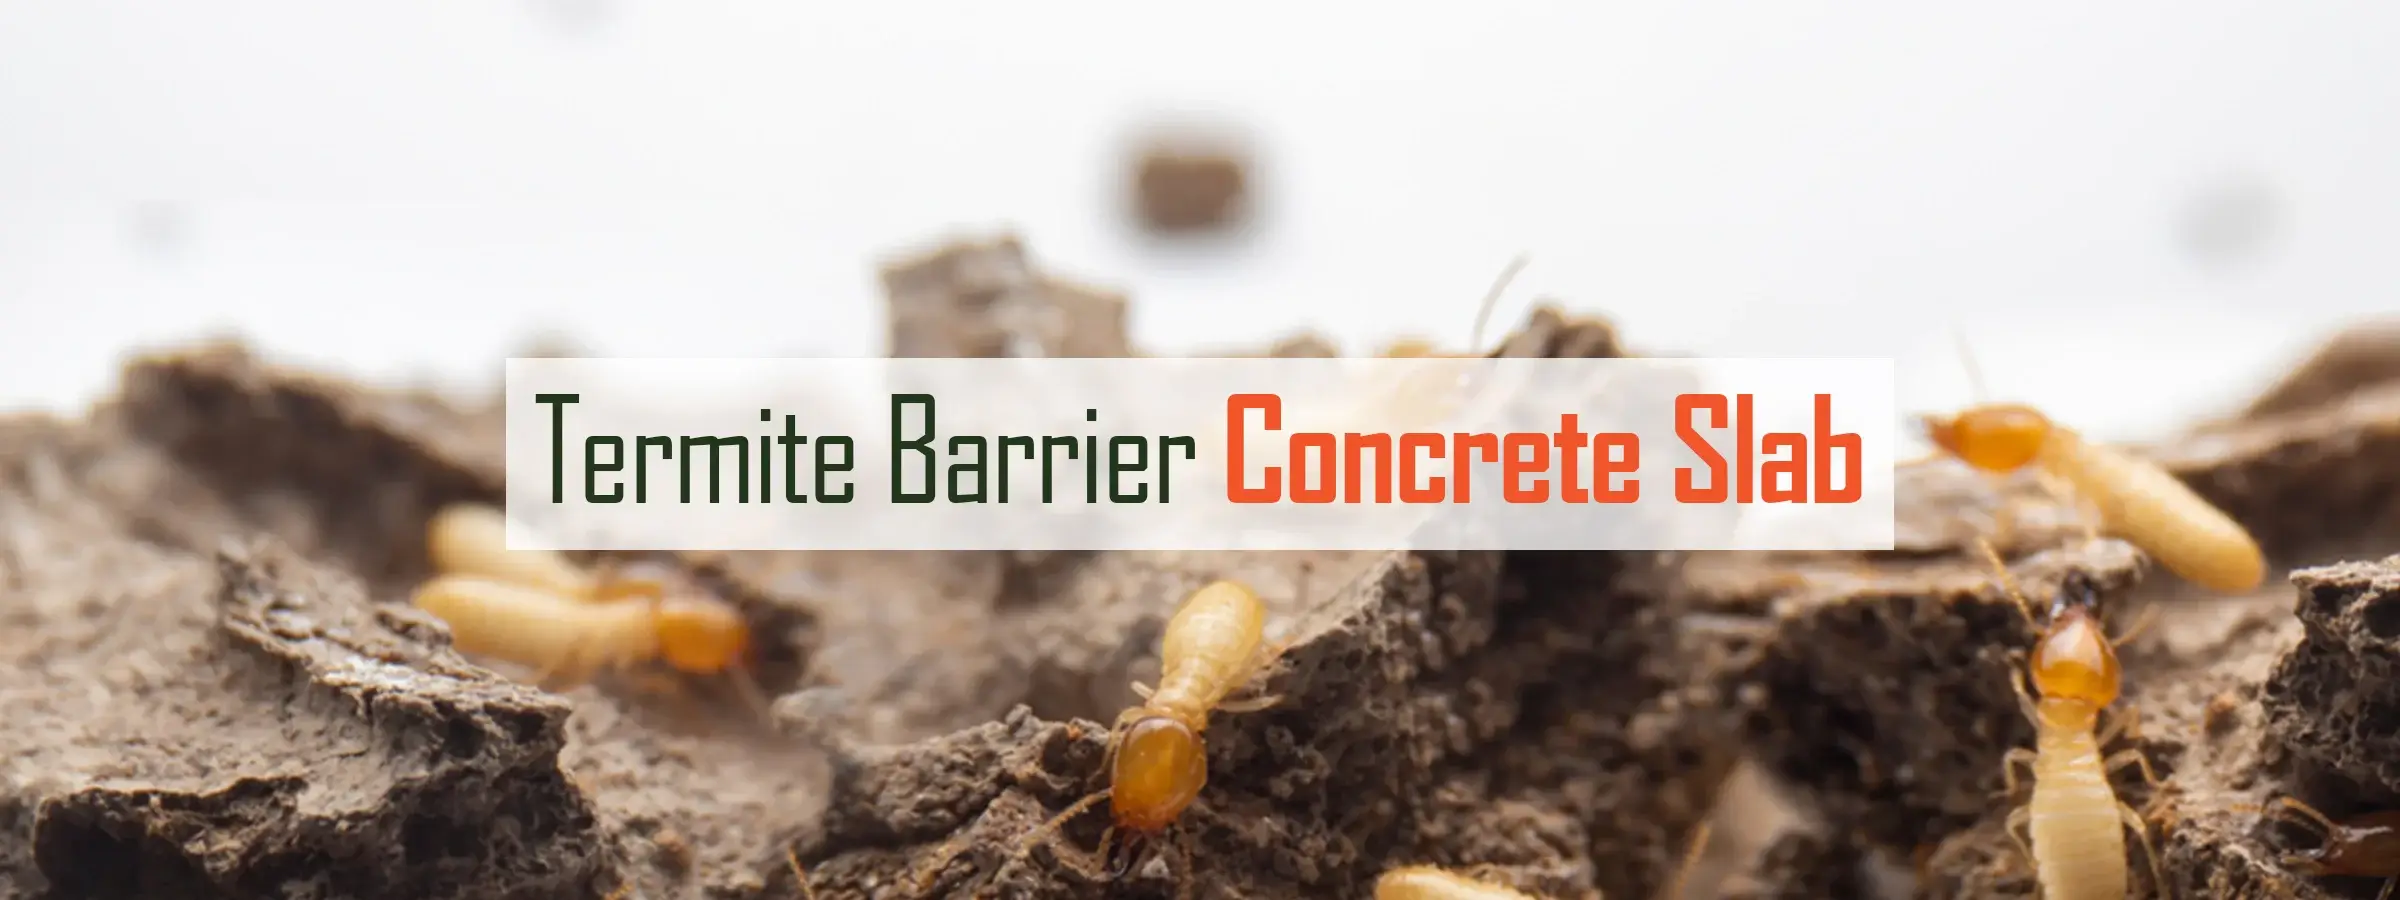 Termite-Barrier-Concrete-Slab 